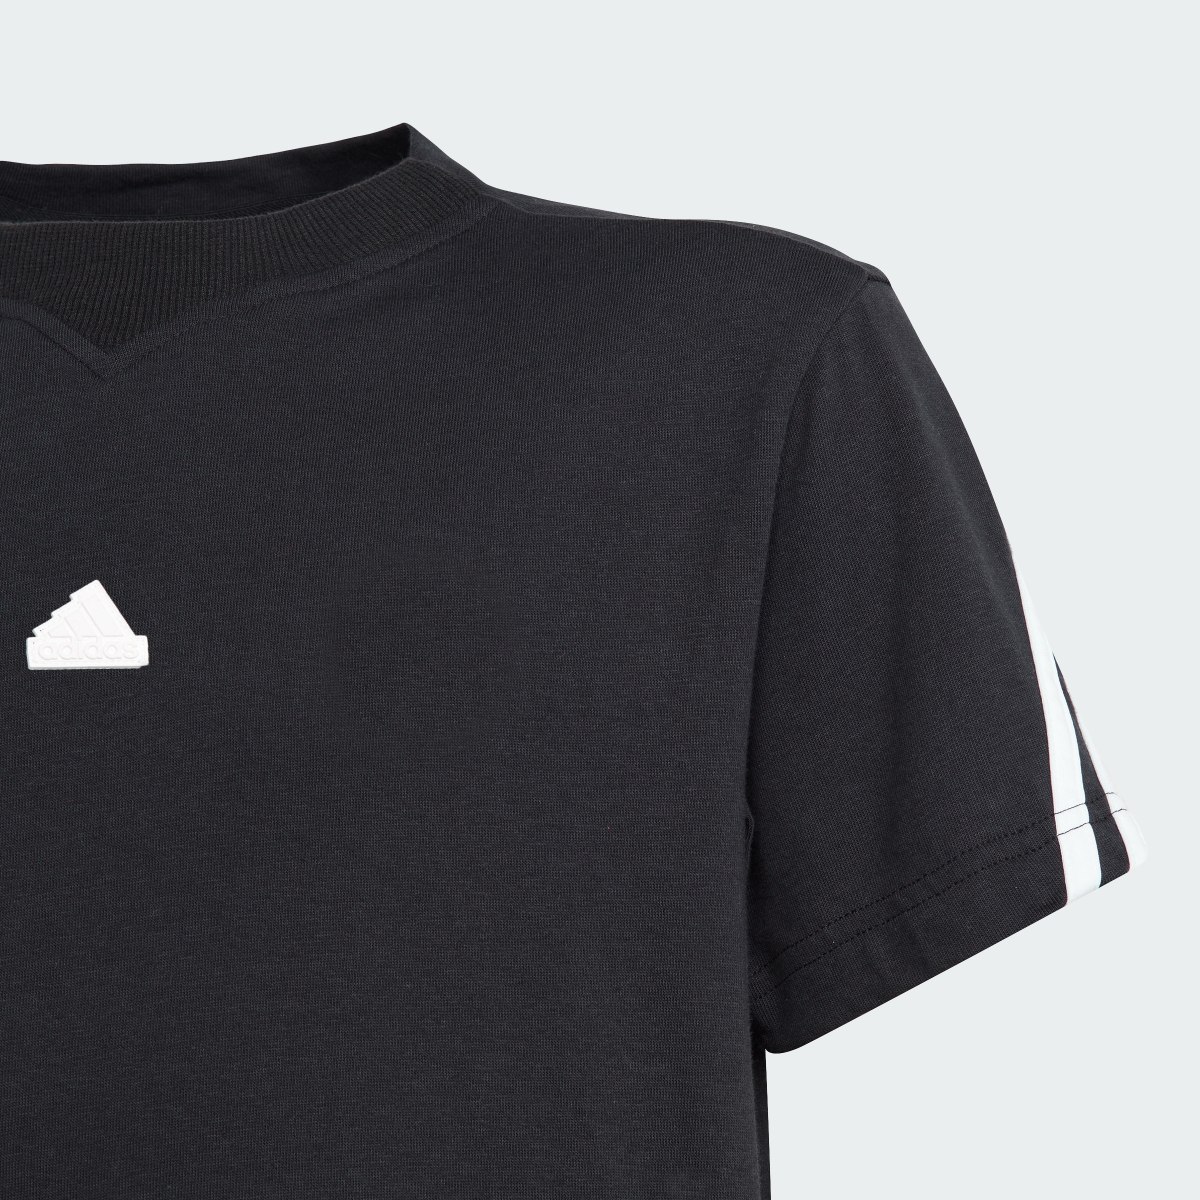 Adidas T-shirt Future Icons 3-Stripes. 5